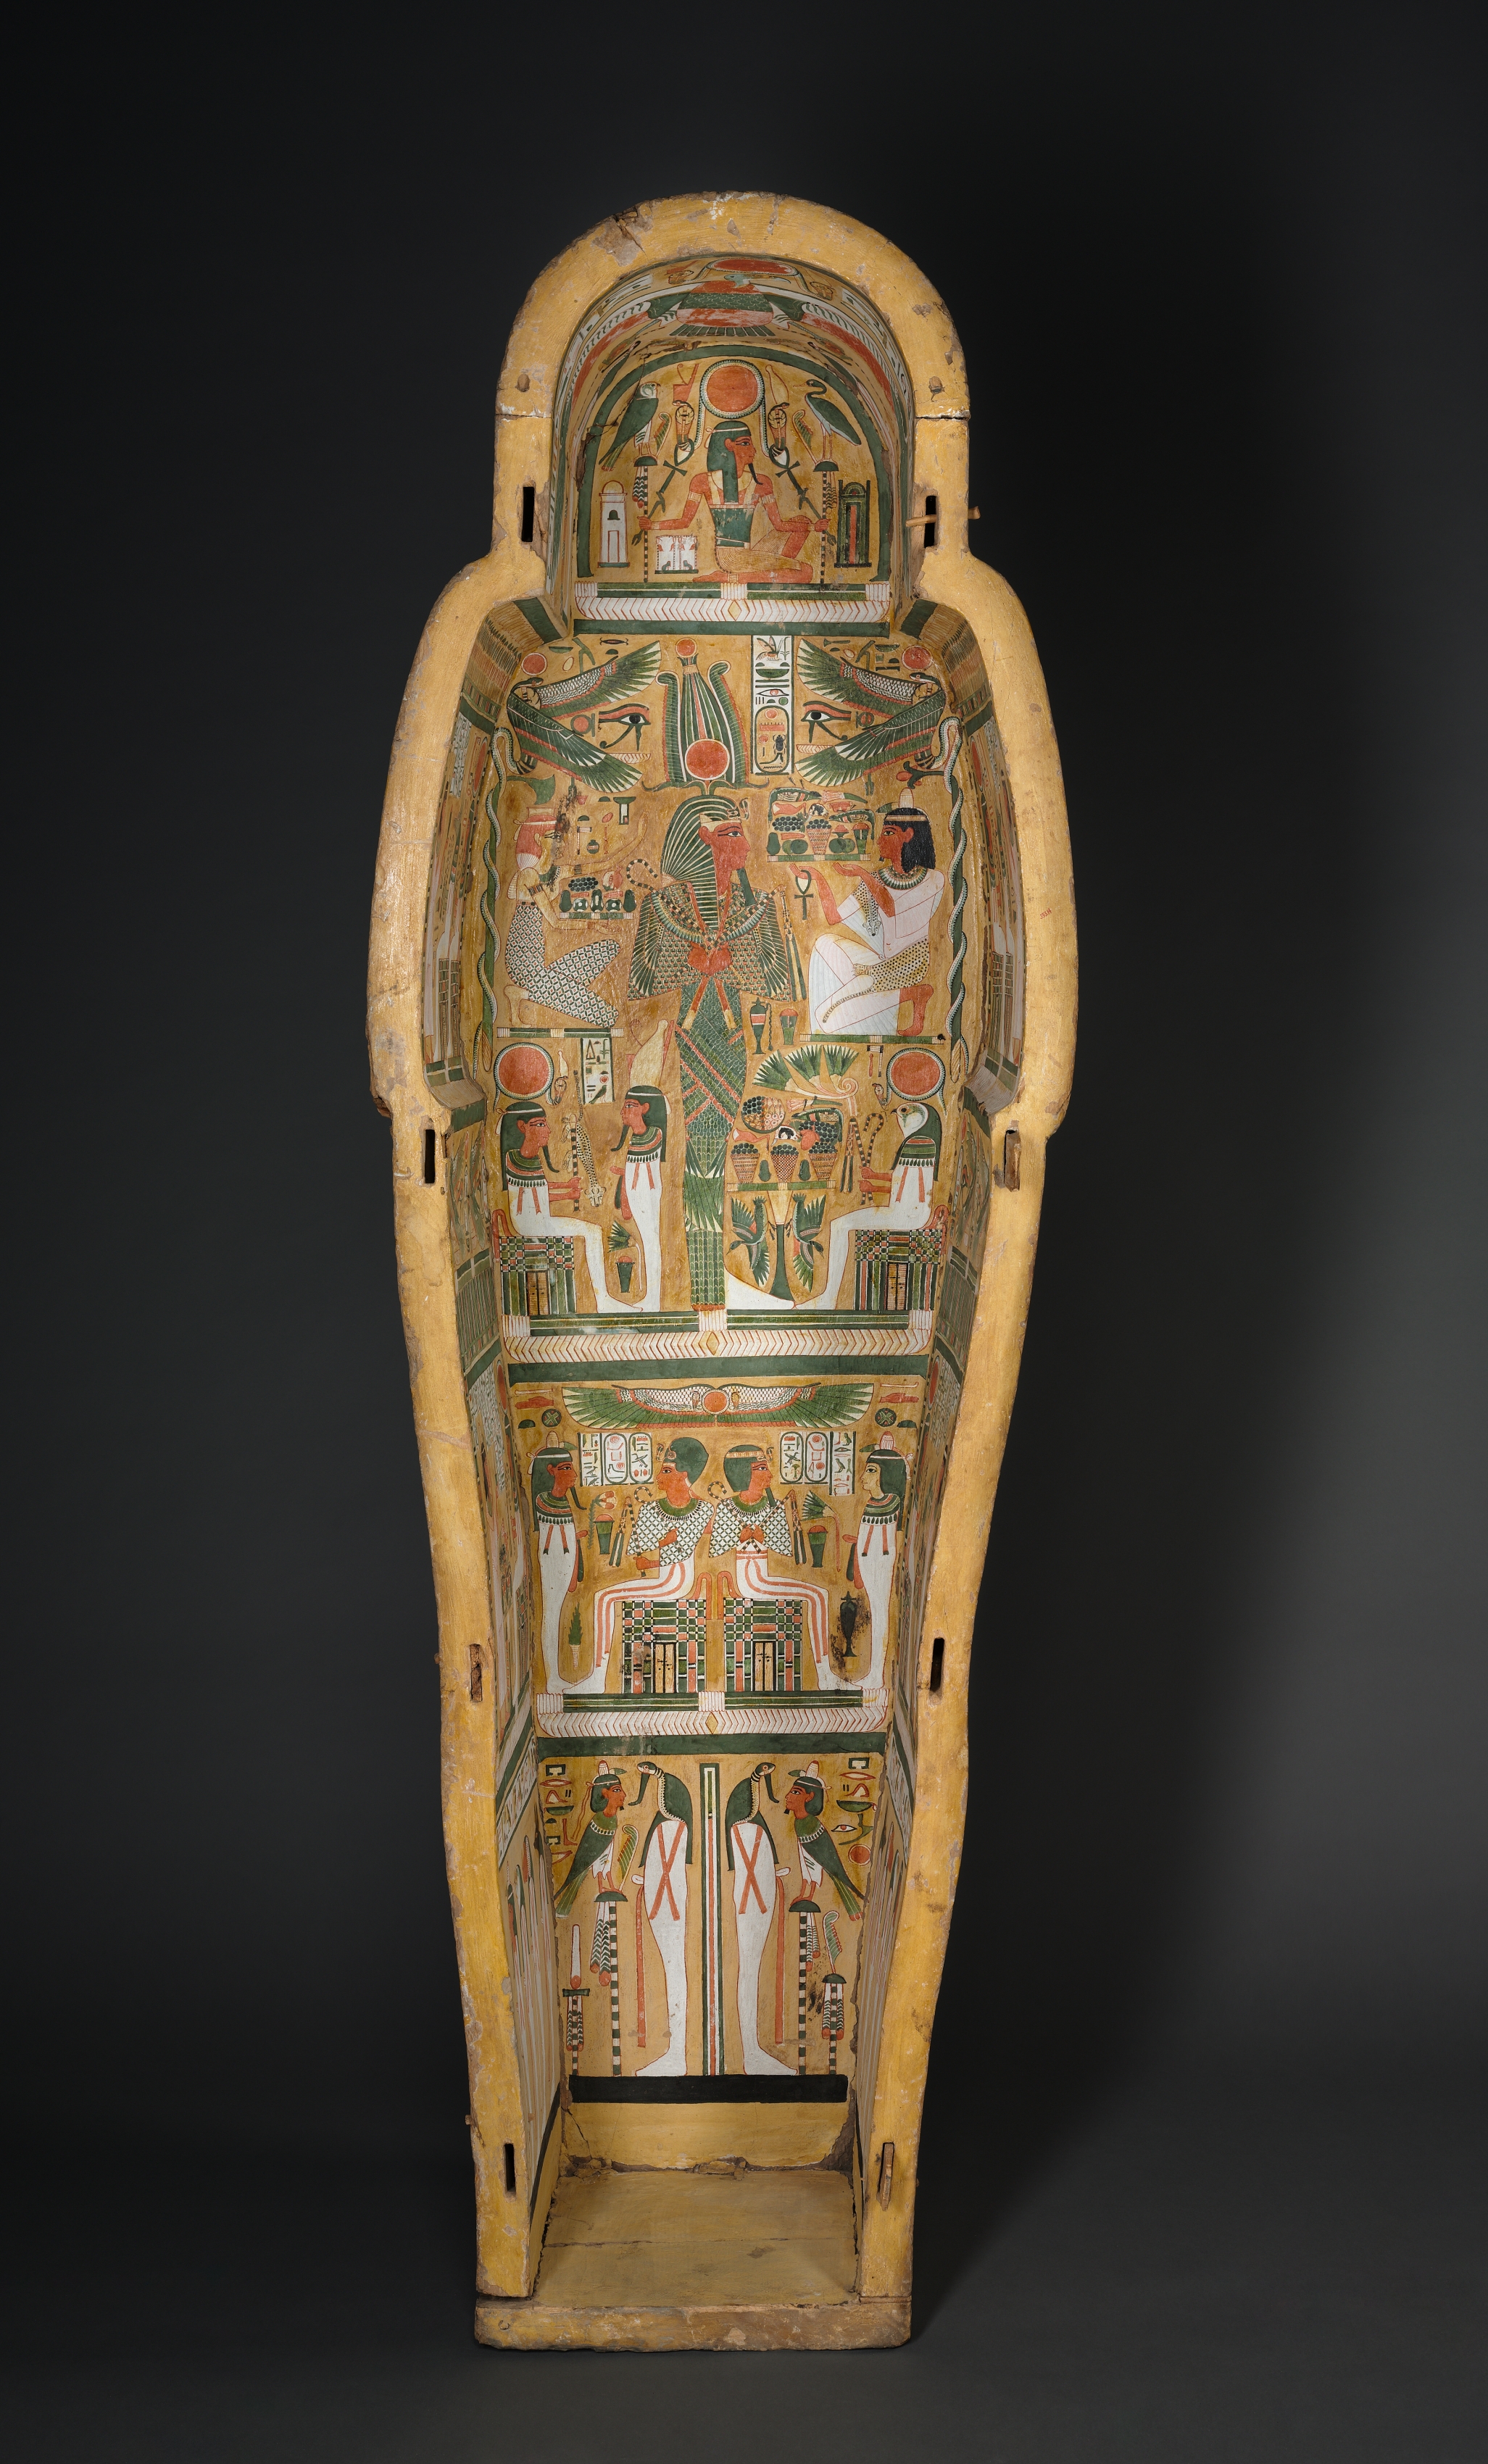 Coffin of Bakenmut